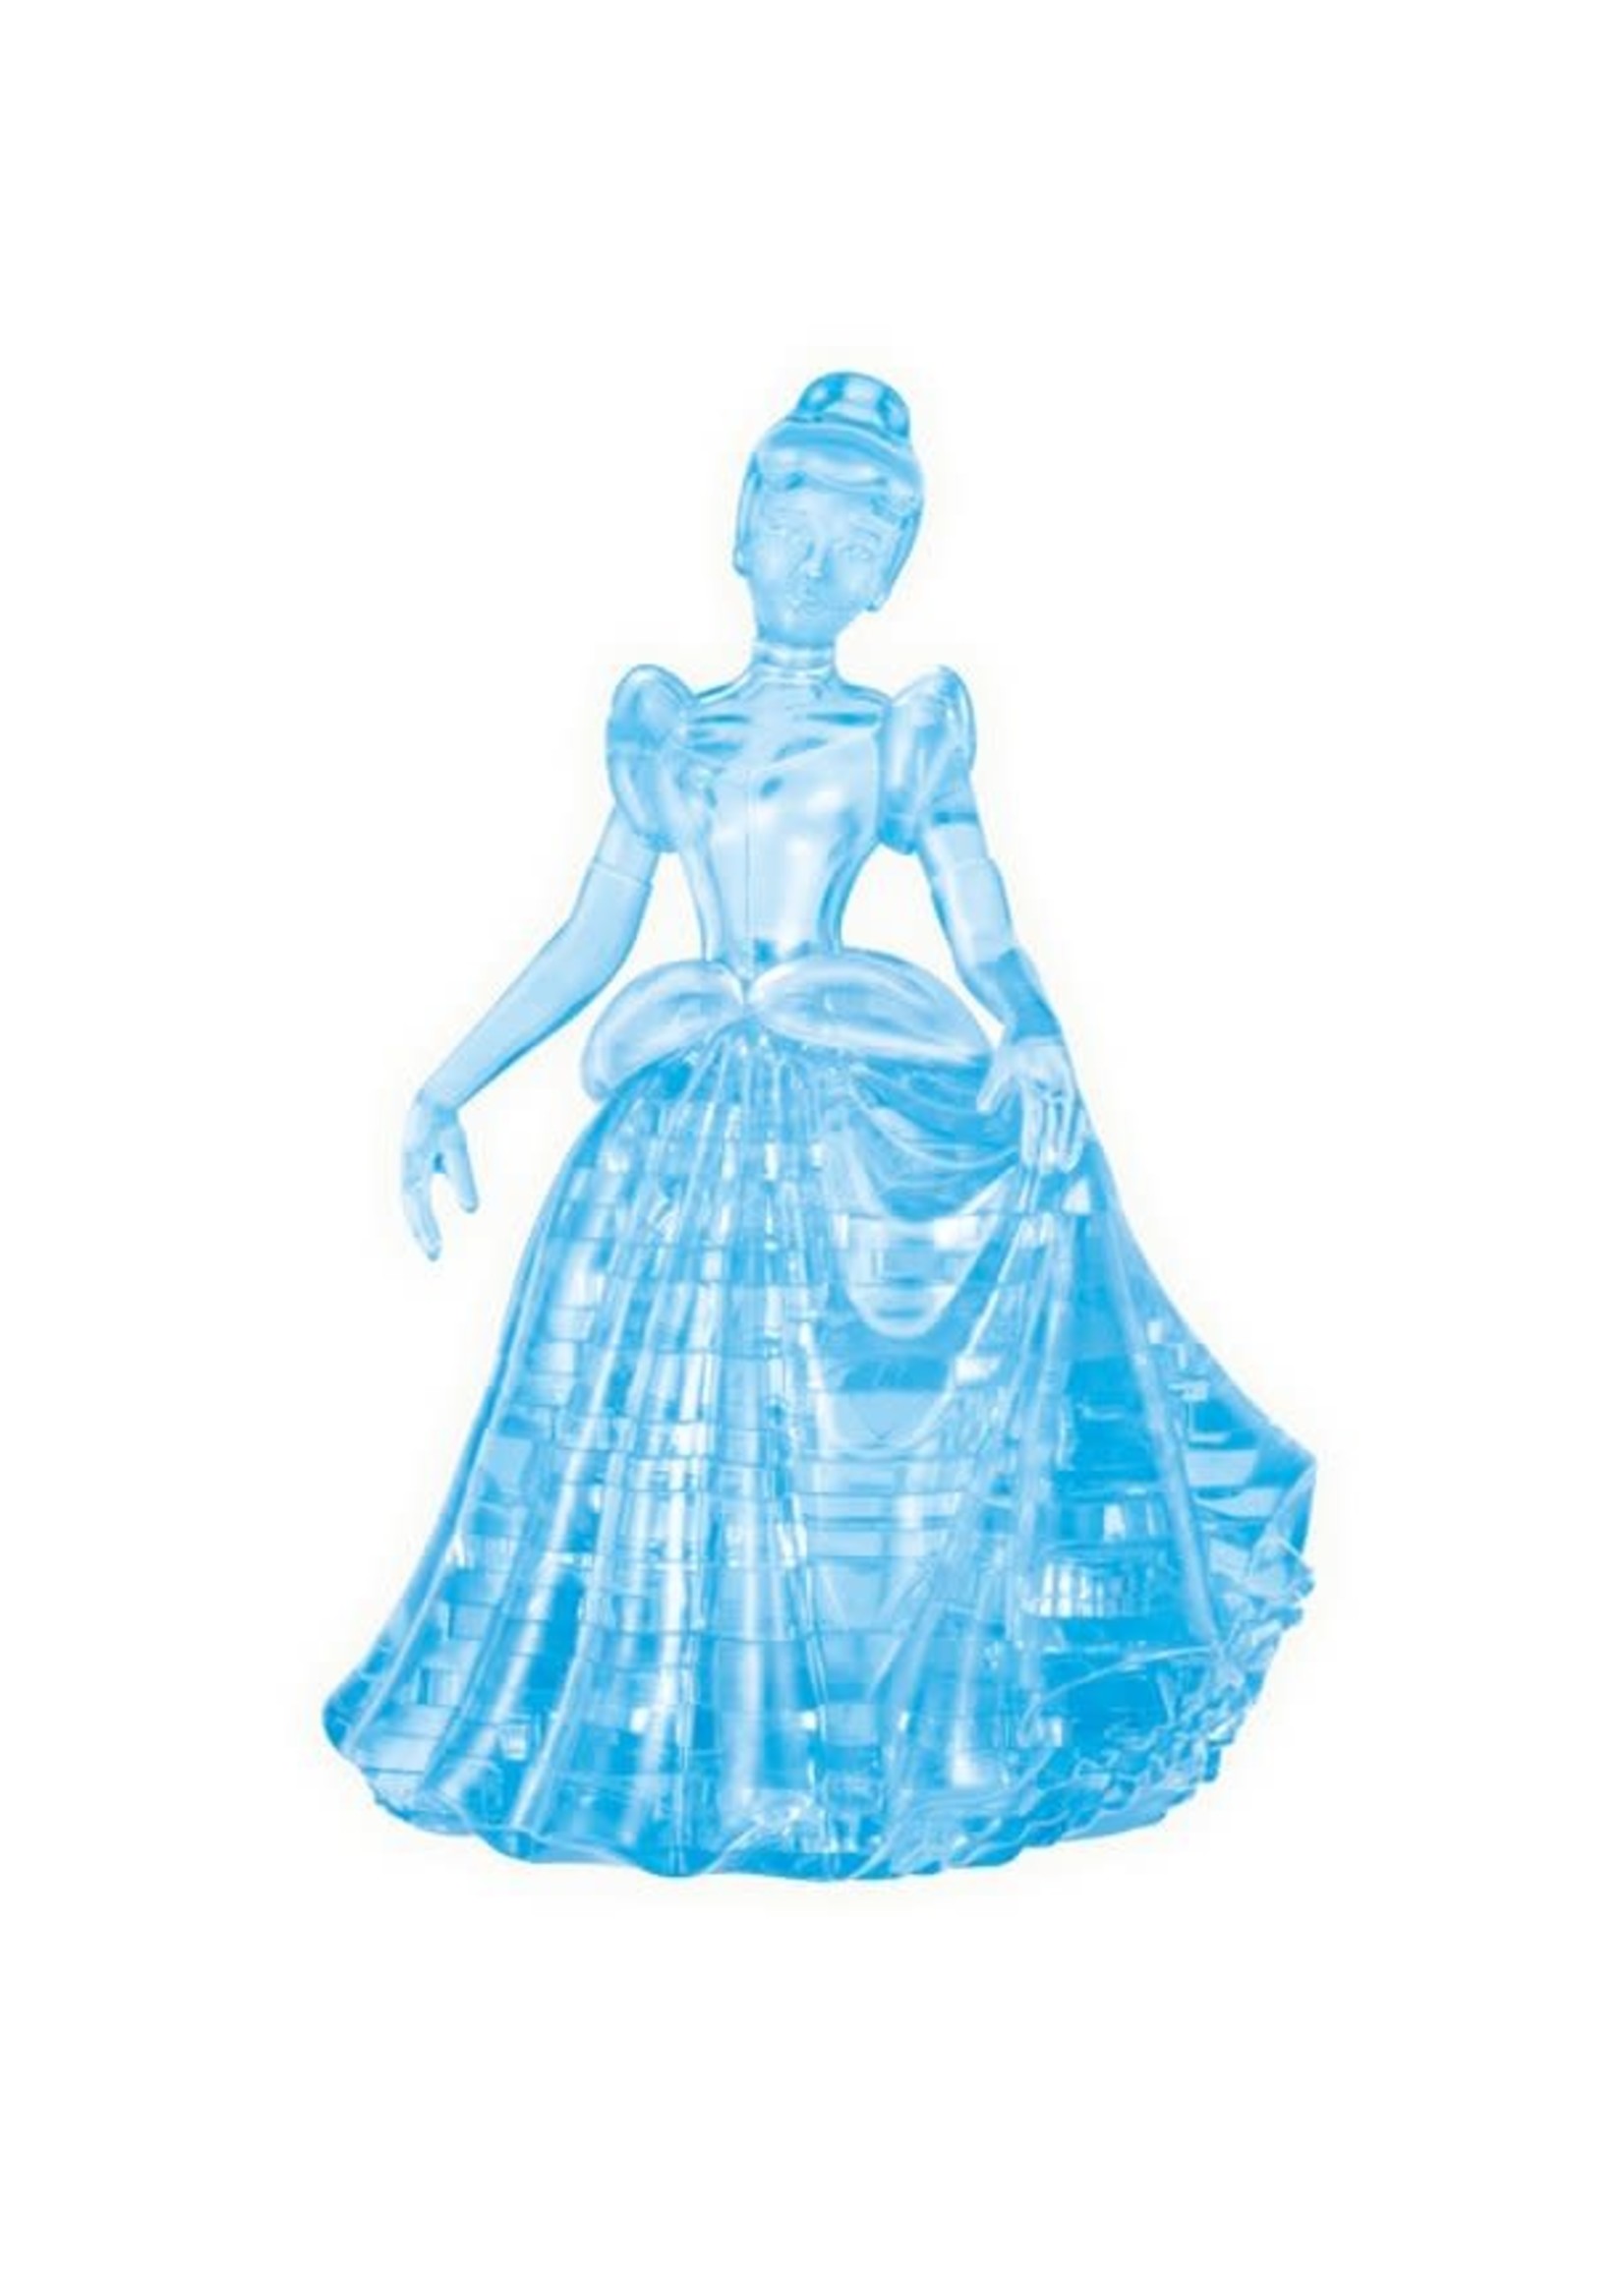 3D Crystal Cinderella